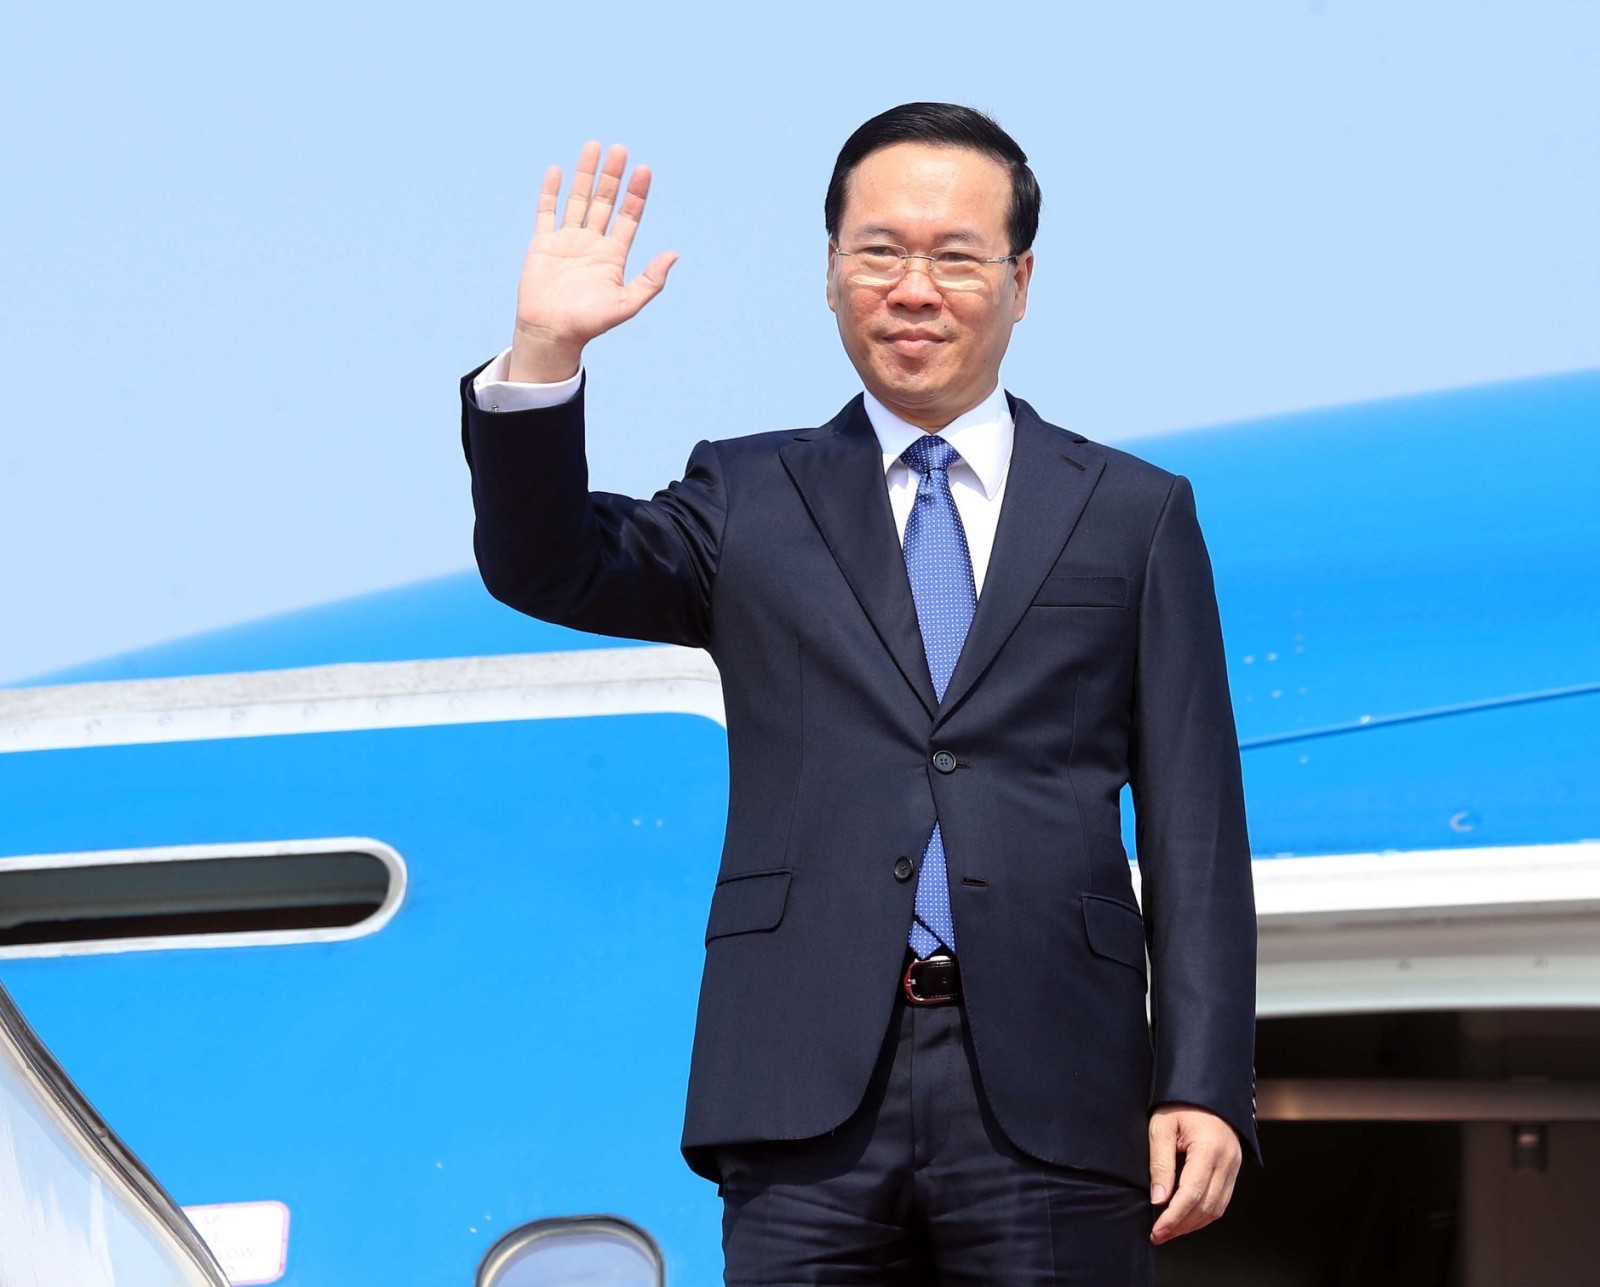 Chùm ảnh lãnh đạo các nước tới Bắc Kinh dự Diễn đàn 'Vành đai và Con đường'  - Ảnh 1.